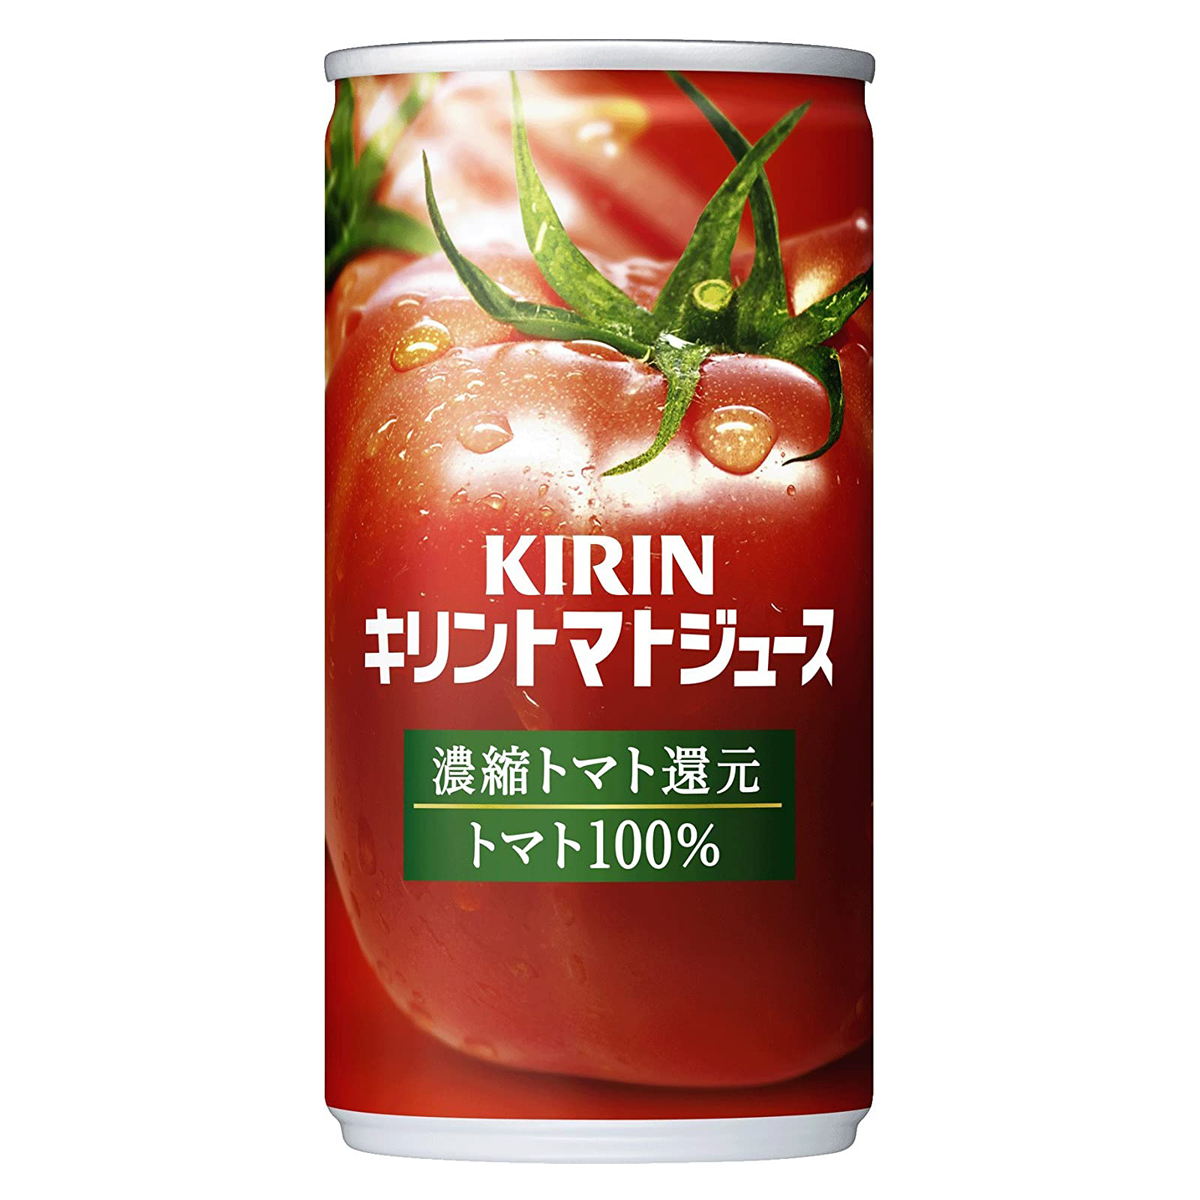 【2ケース】キリン トマトジュース 濃縮トマト還元 190g 缶 ケース 飲料 飲み物 ソフトドリンク 30本×2ケース 買いまわり ポイント消化